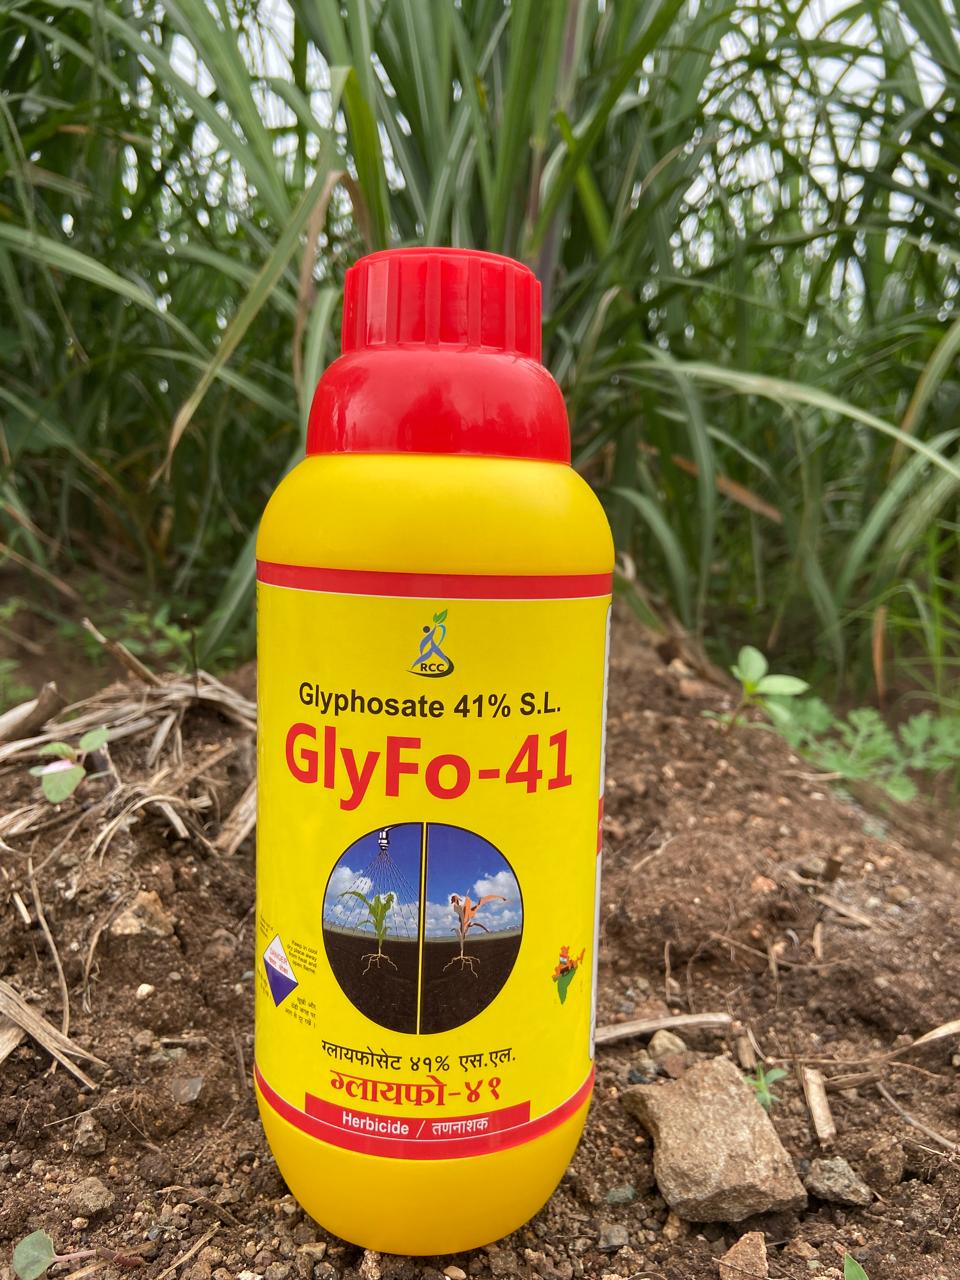 GlyFo-41 (Glyphosate 41% S.L)